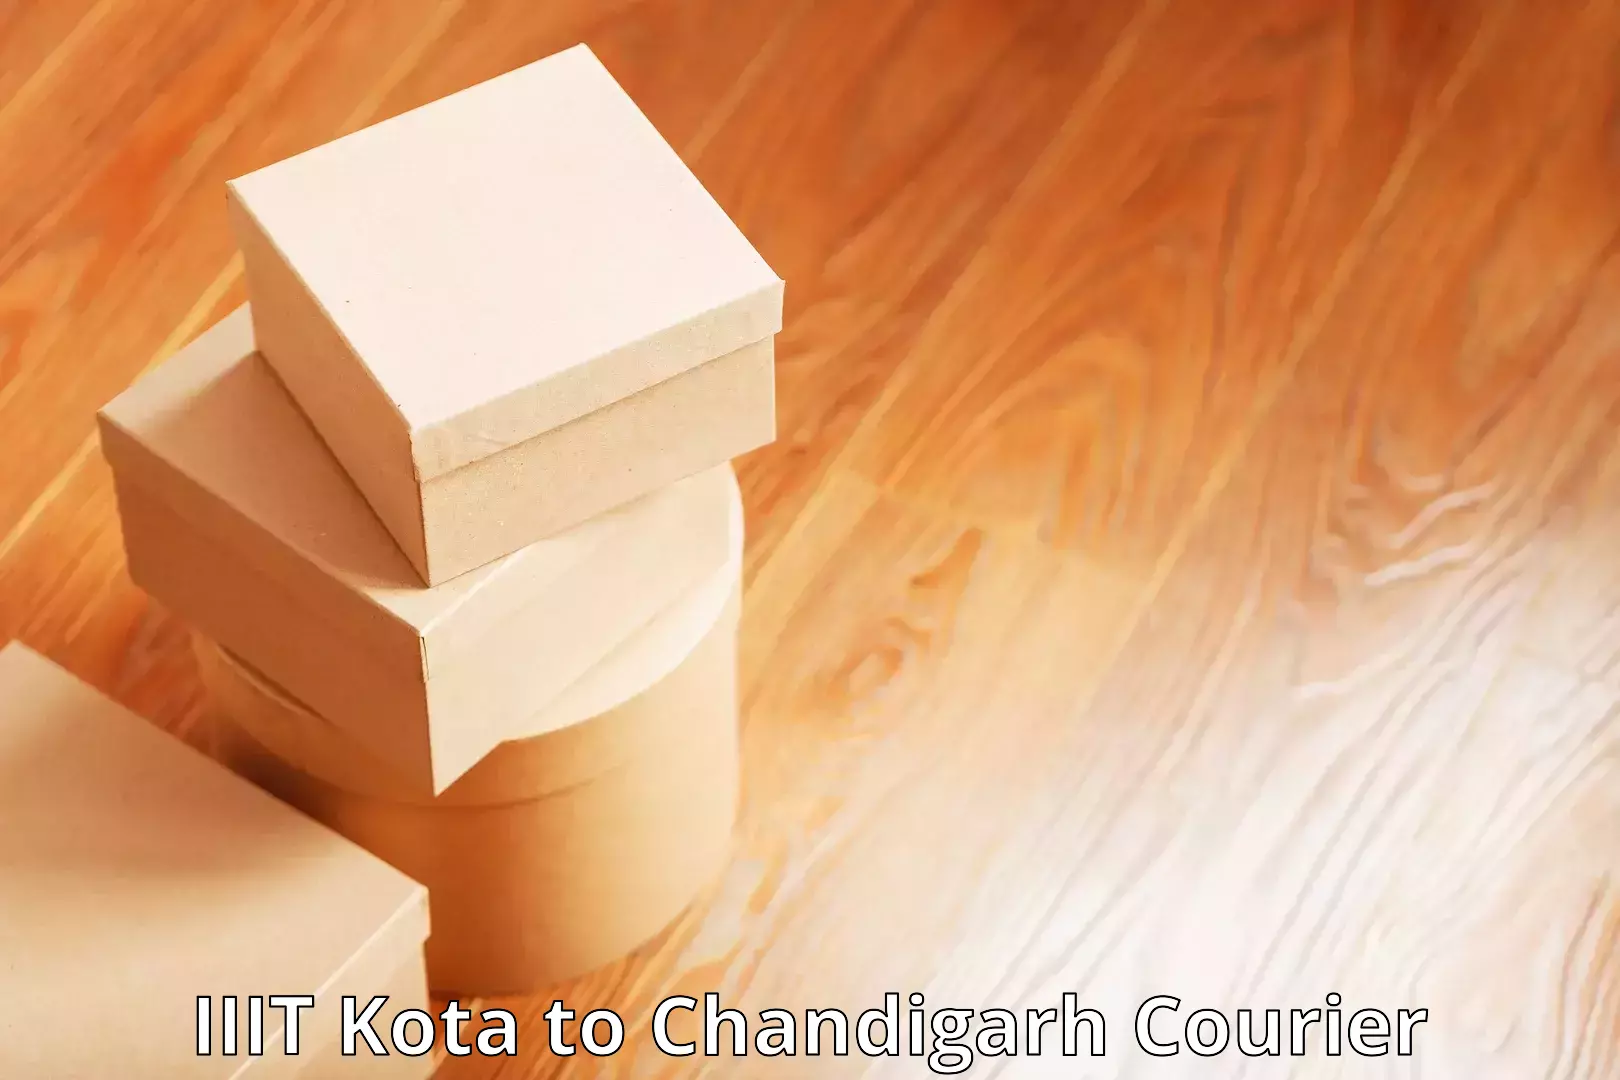 Customizable shipping options IIIT Kota to Chandigarh